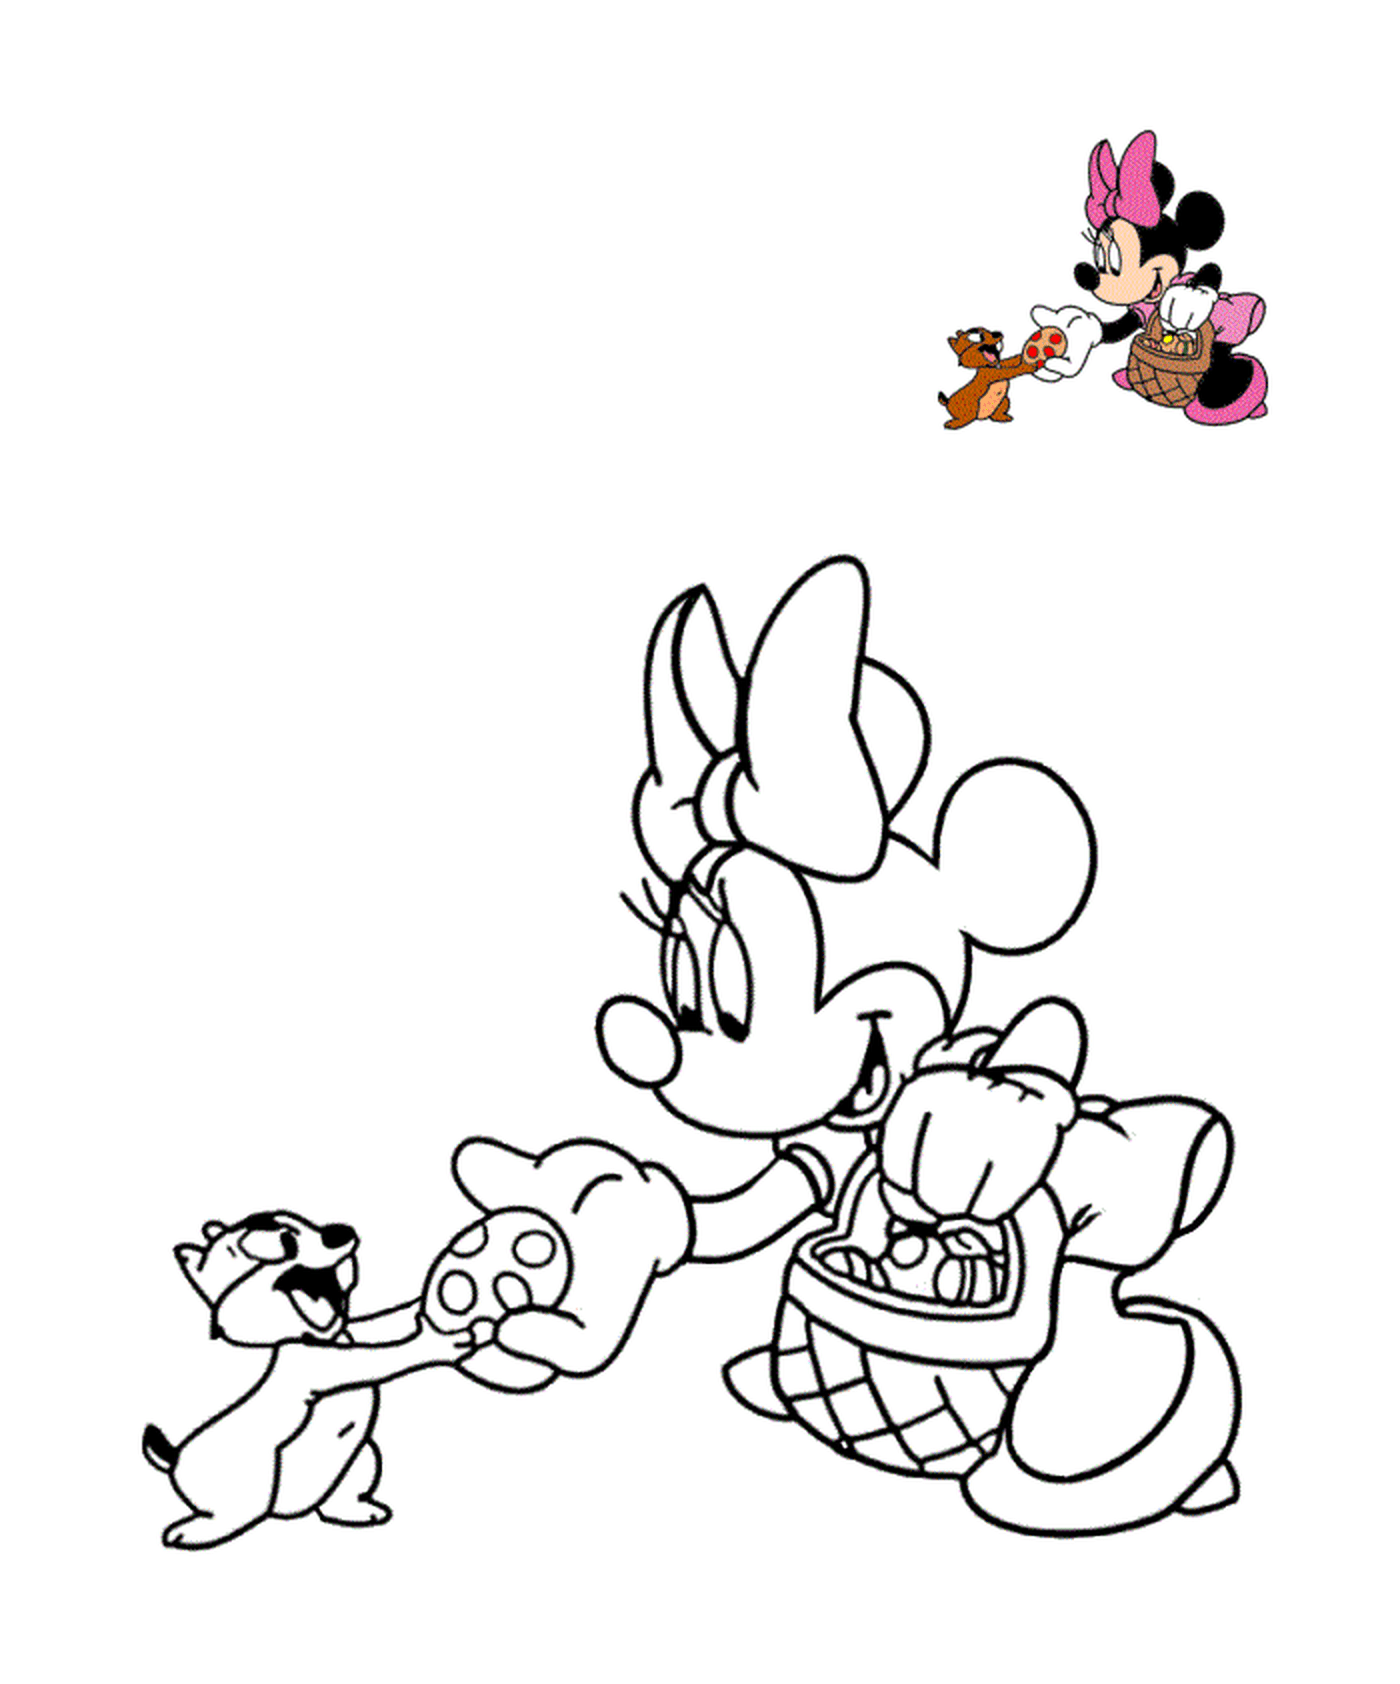  Minnie amigos barcos ratón 